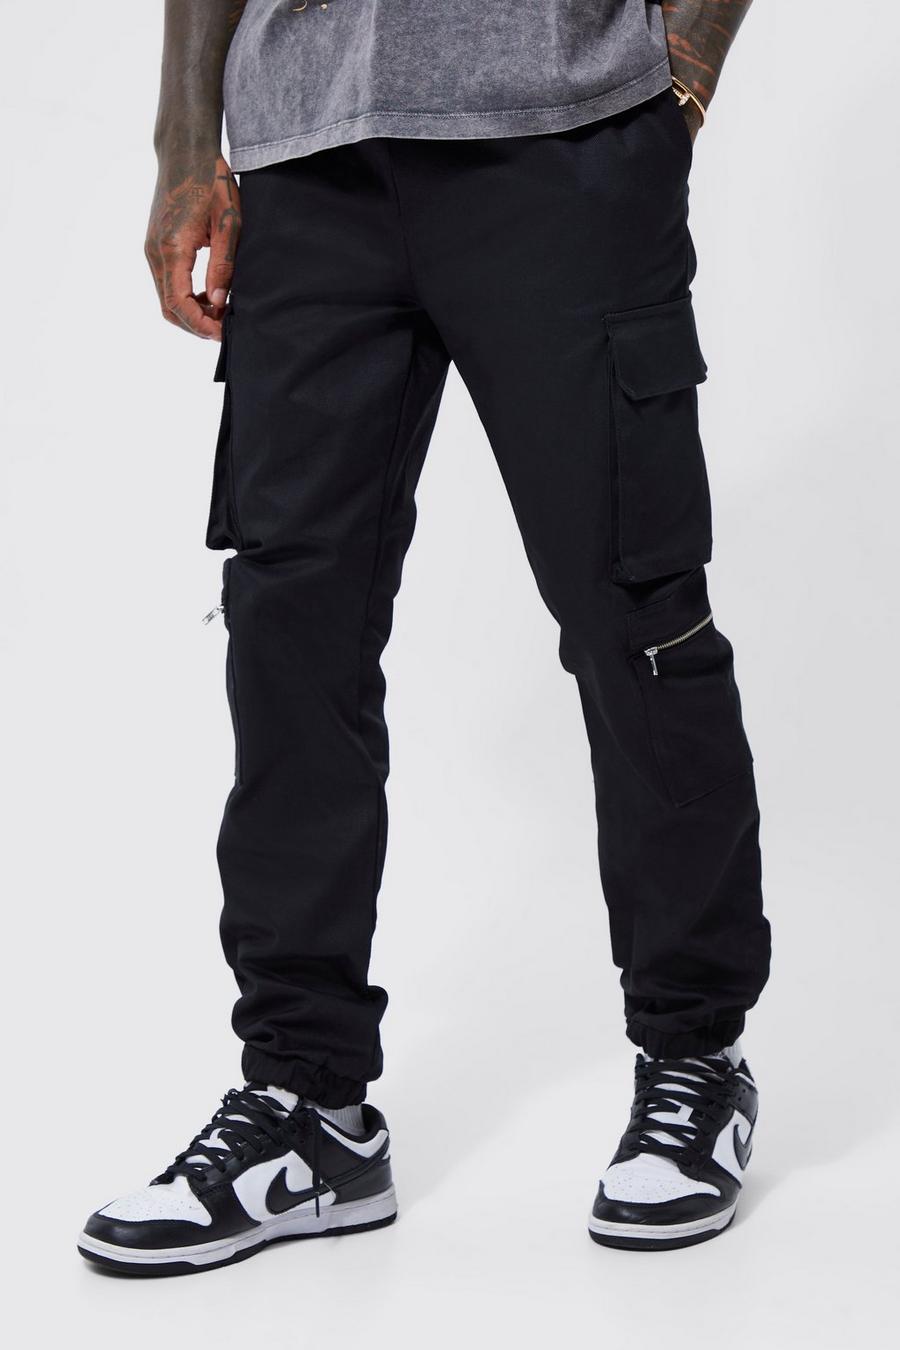 Pantaloni Cargo con tasche multiple, zip e vita elasticizzata, Black